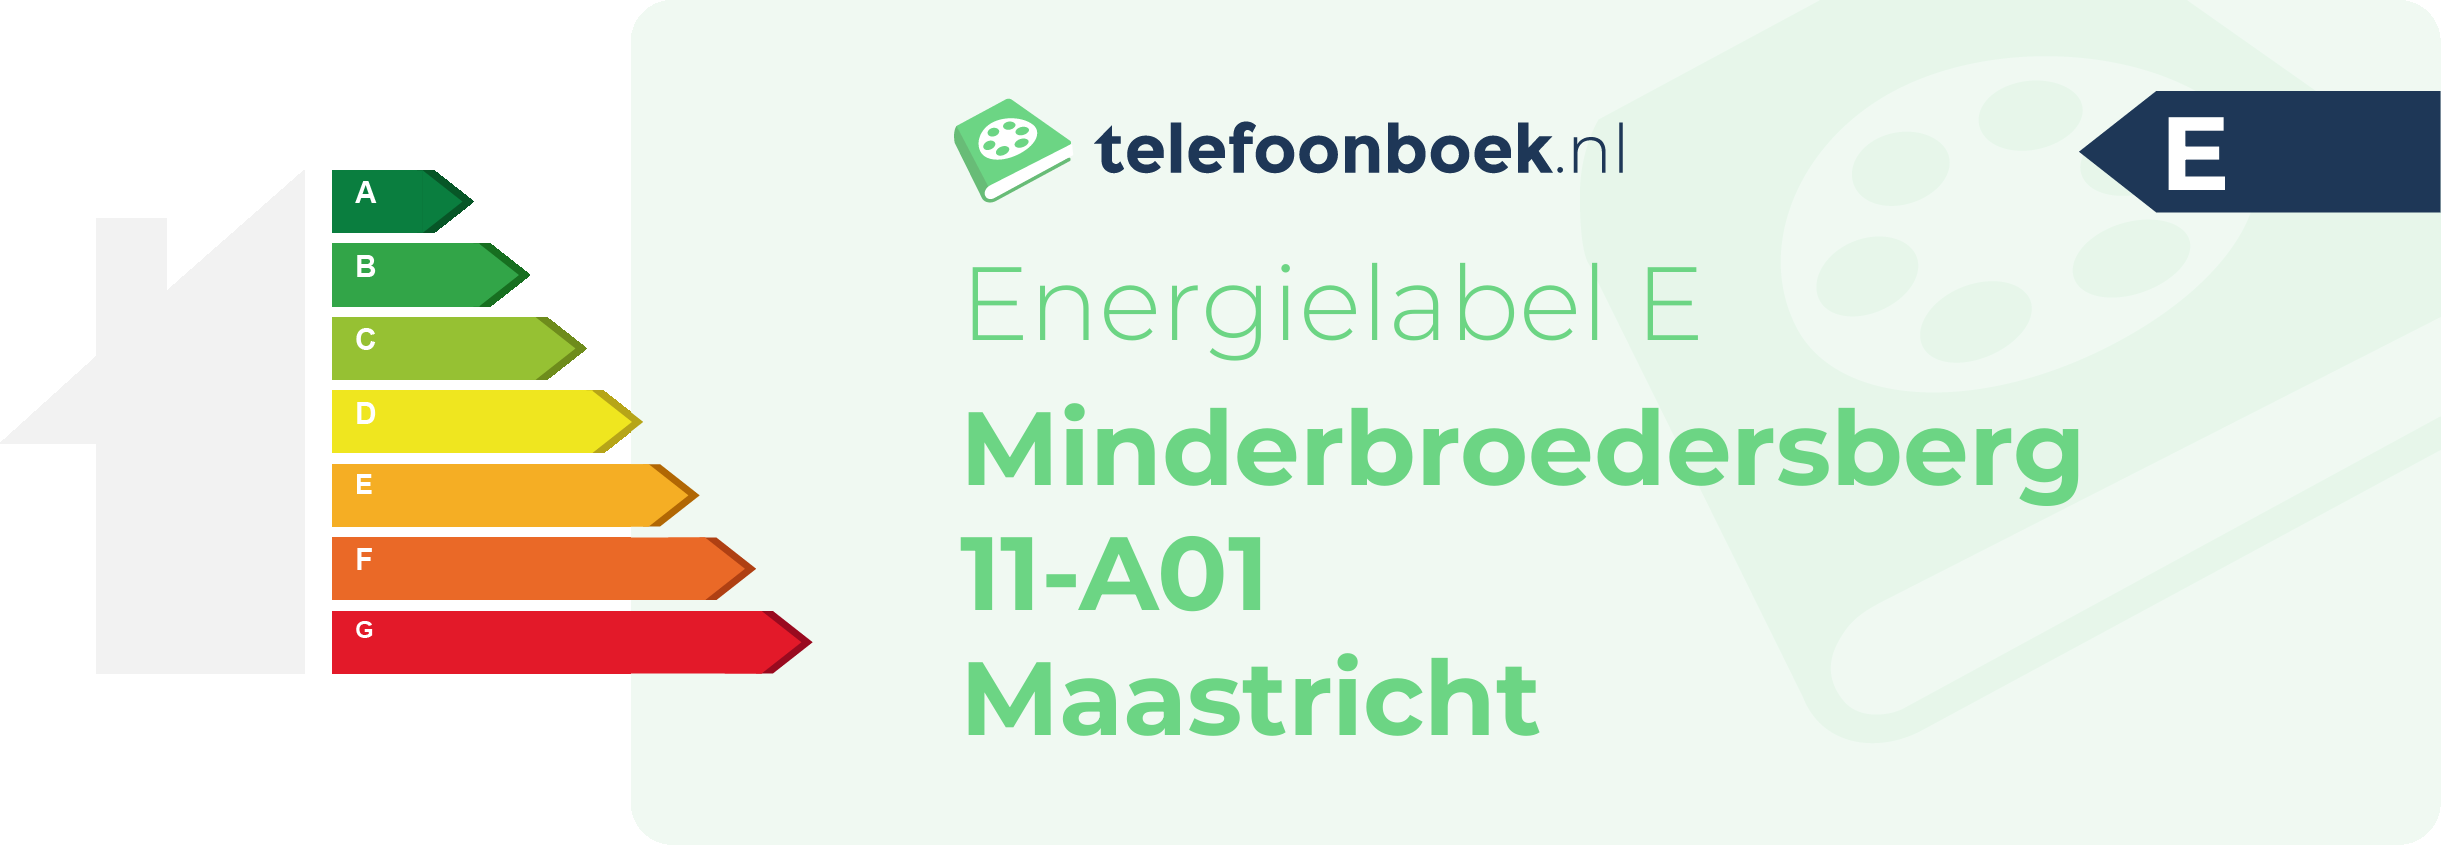 Energielabel Minderbroedersberg 11-A01 Maastricht